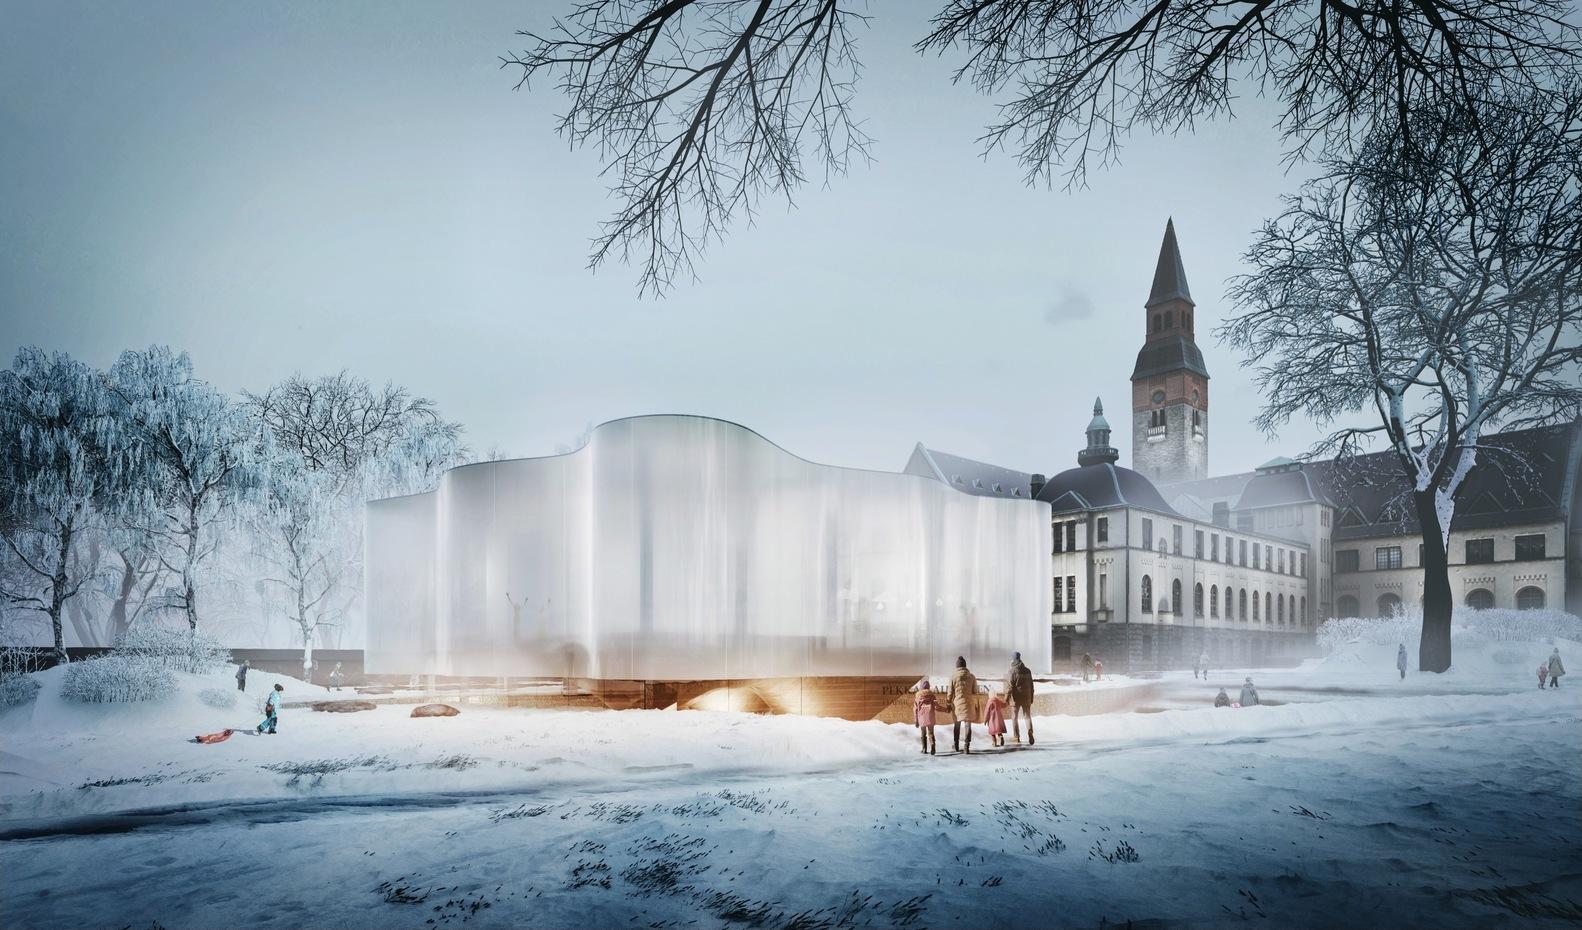 【芬蘭國家博物館建築競賽】懸浮白雲新翼設計 靈感來自芬蘭天然地貌